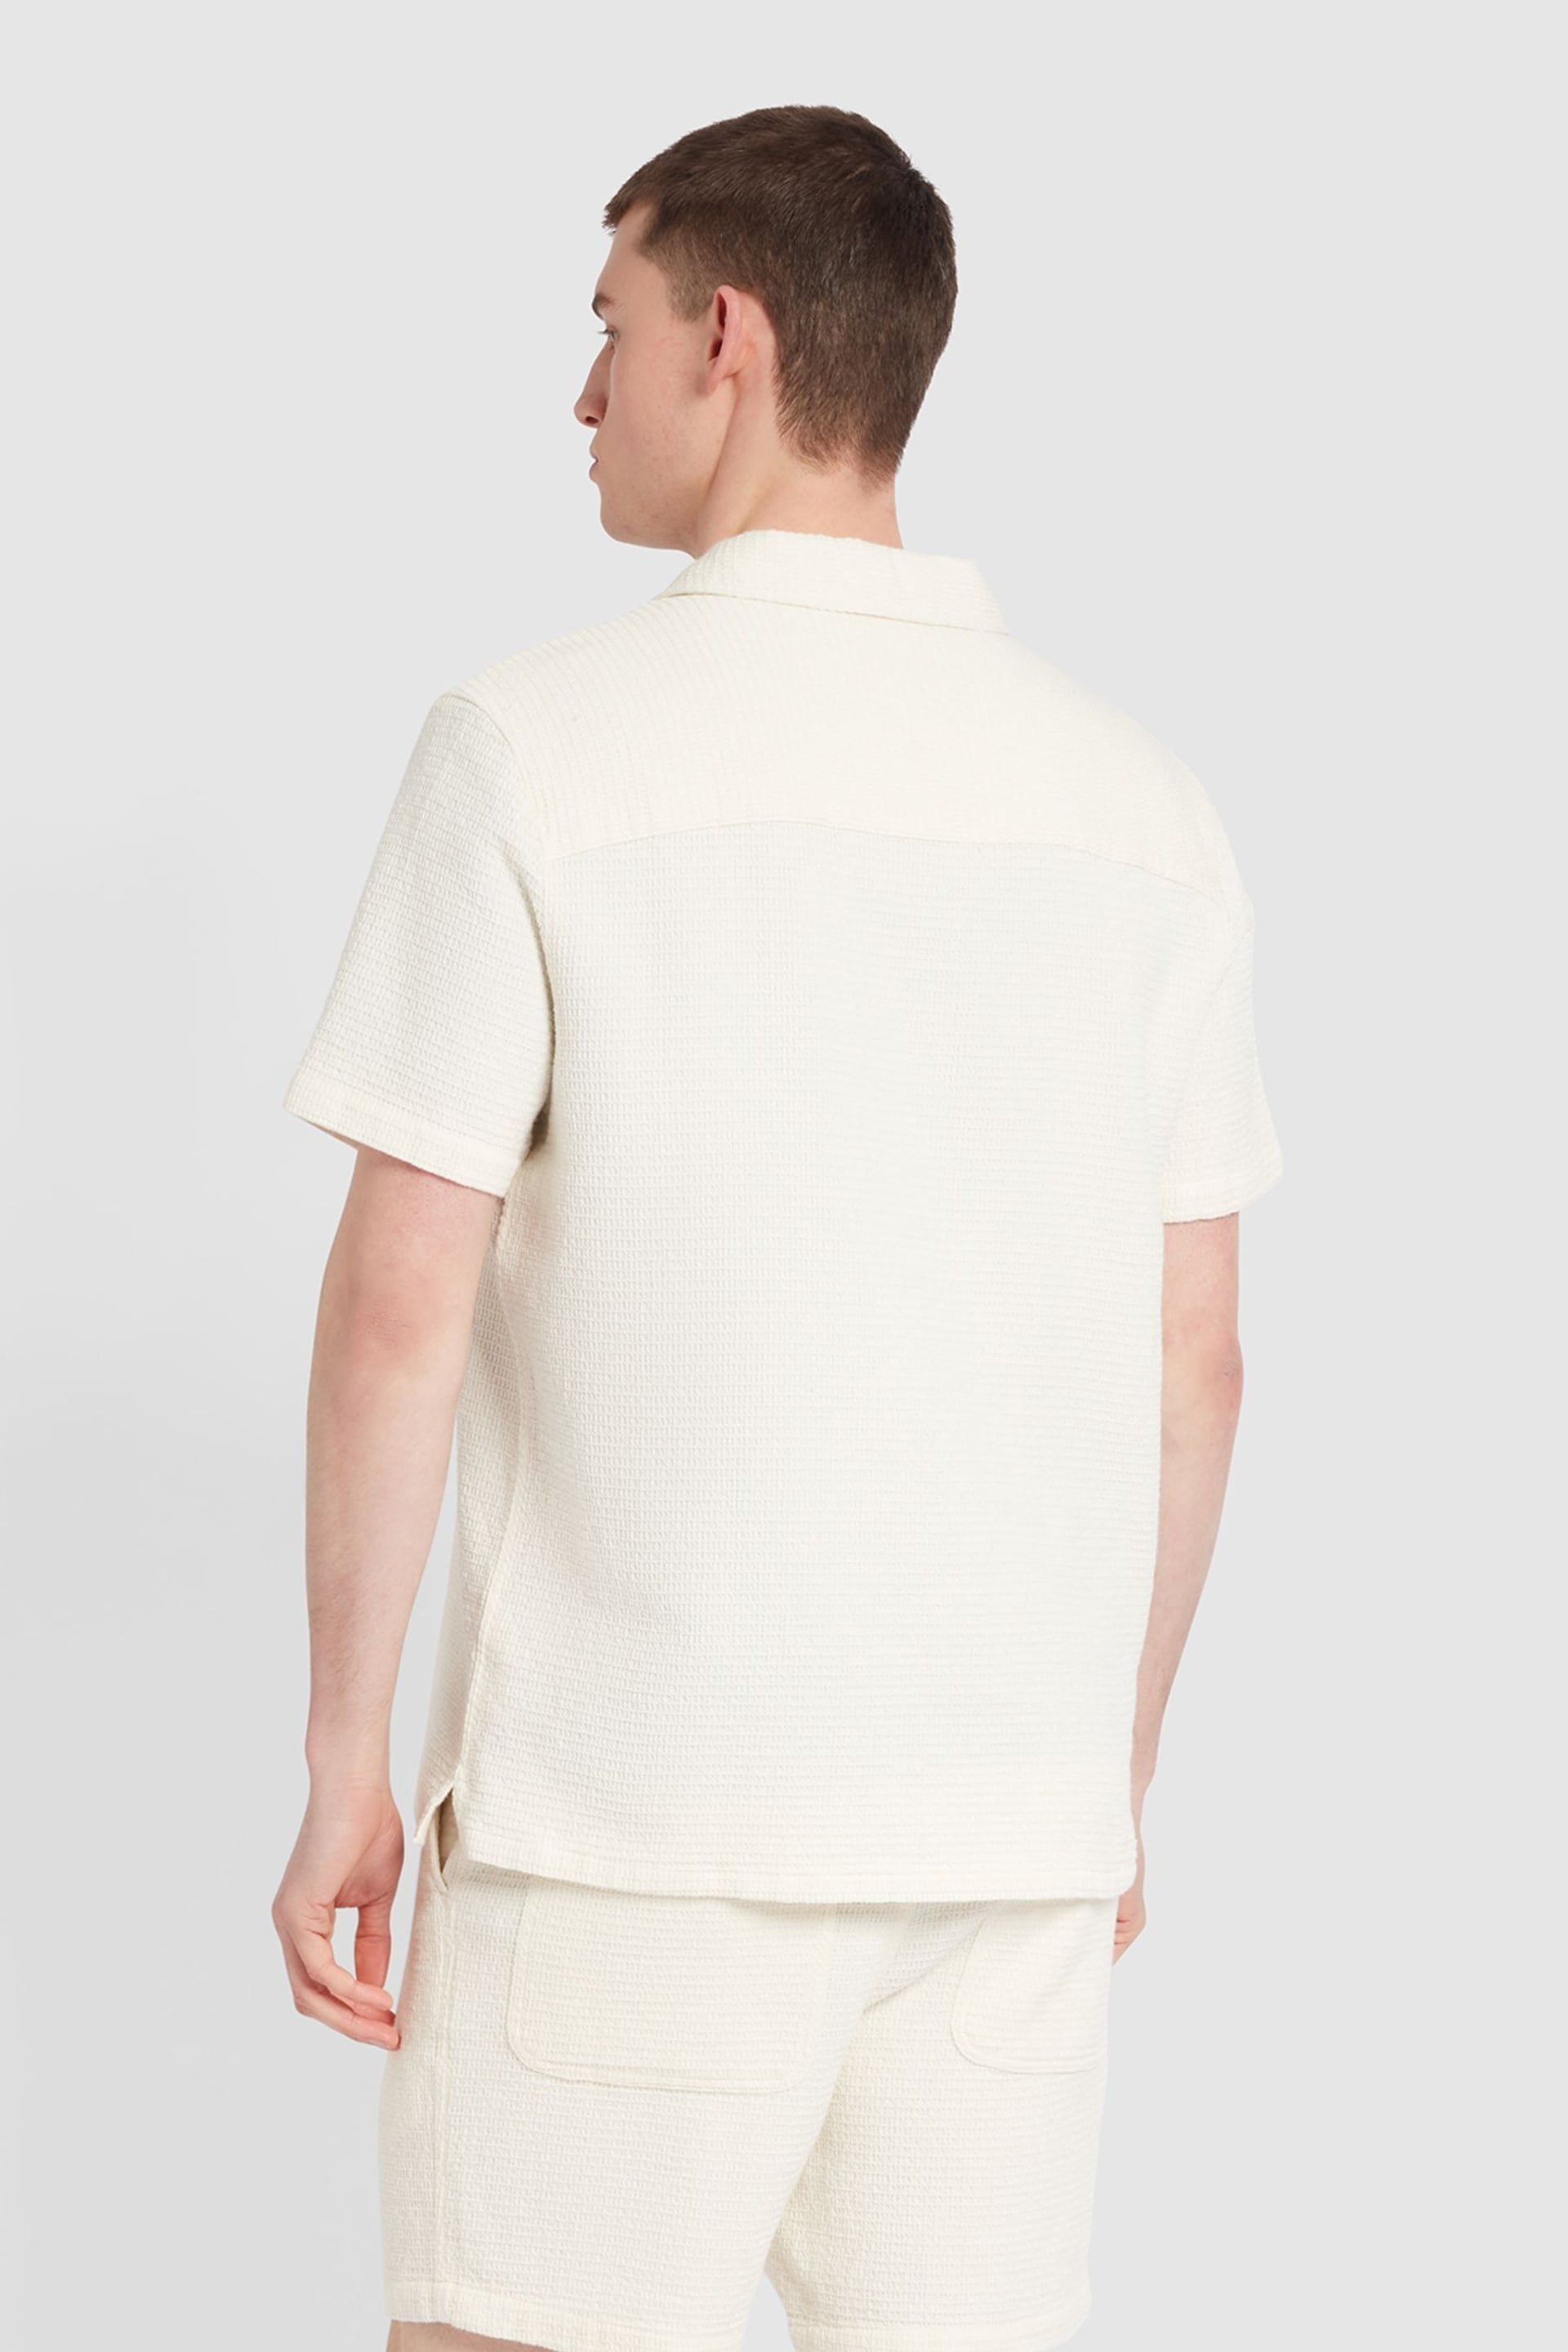 Farah Natural Astro Short Sleeve Shirt - Image 2 of 4